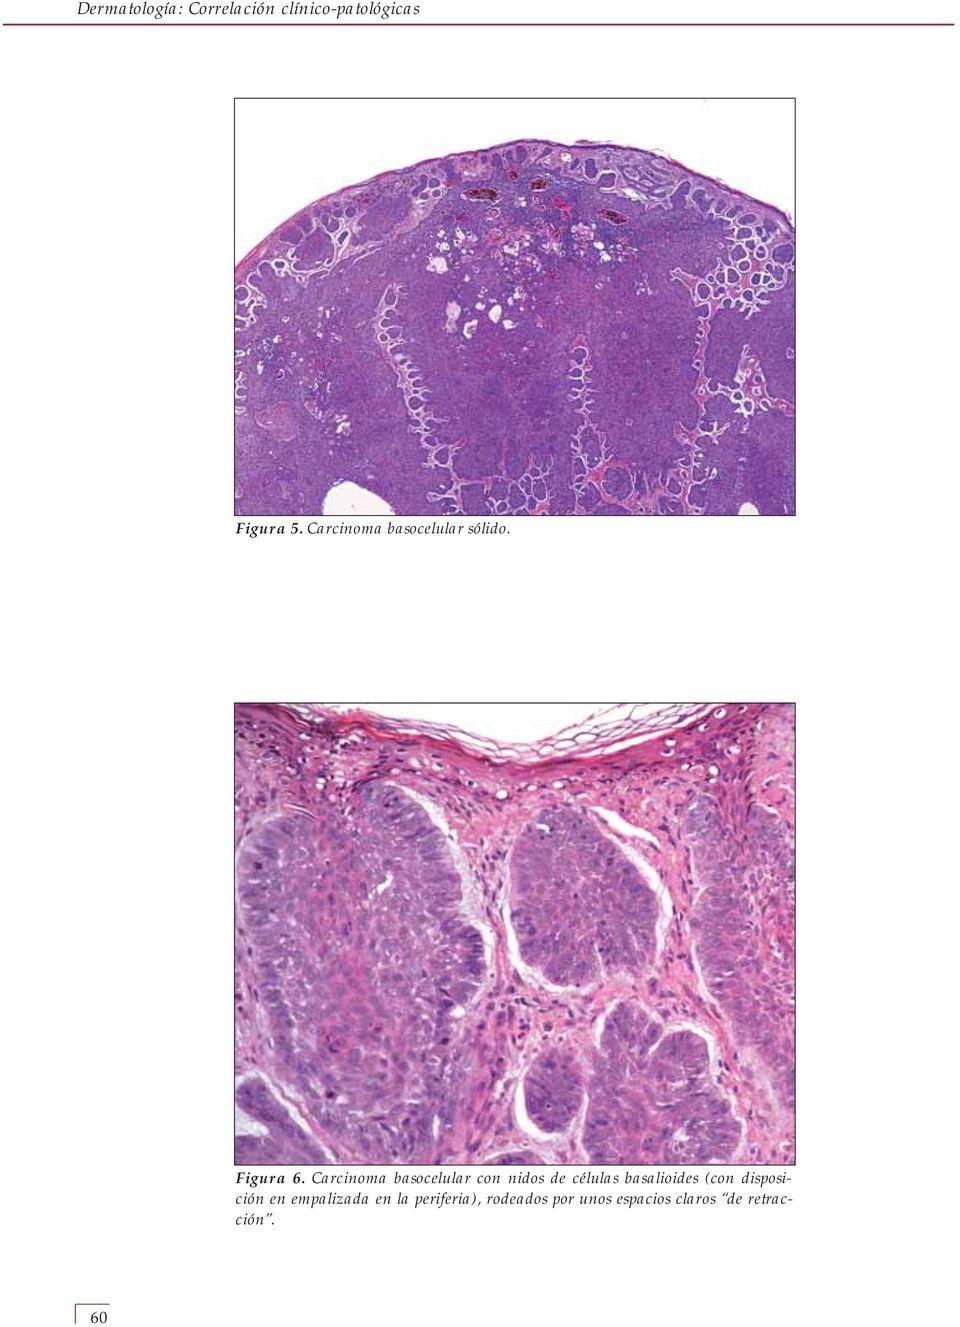 Carcinoma basocelular con nidos de células basalioides (con